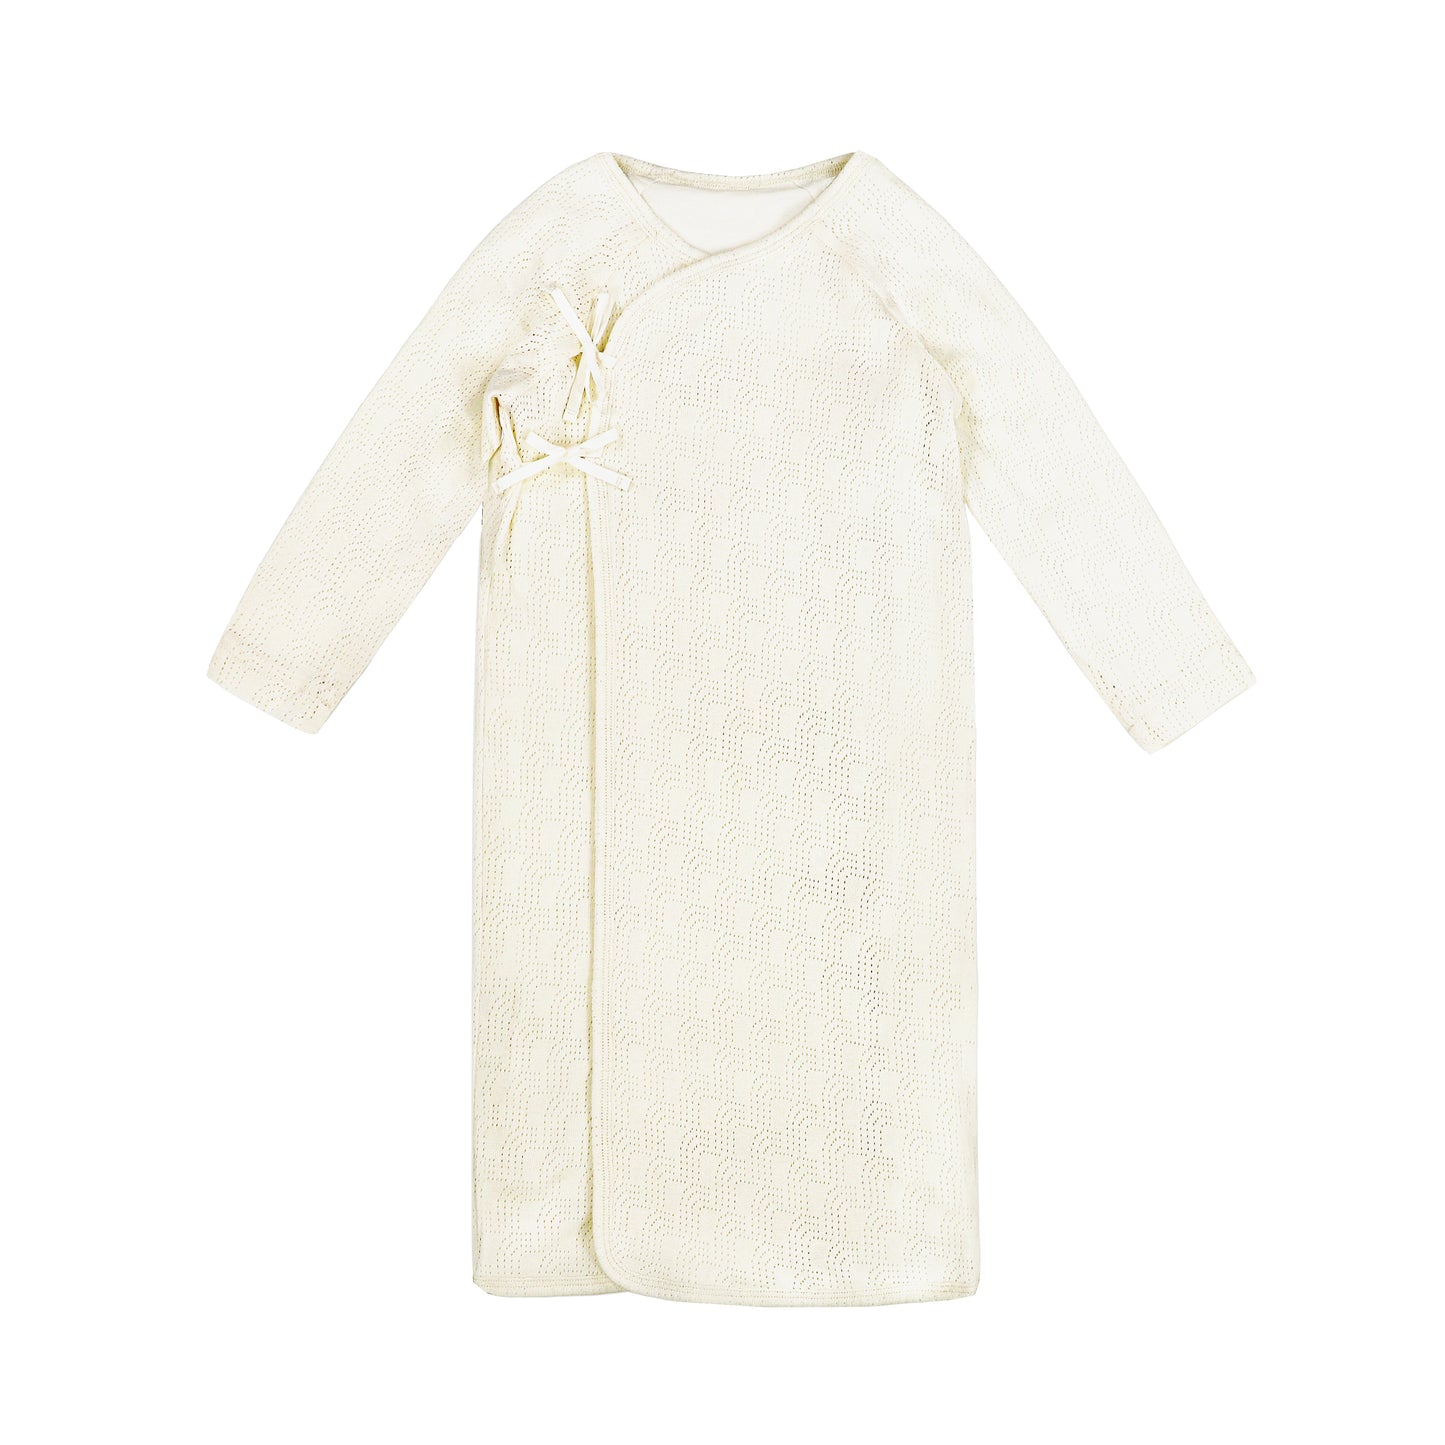 童裝BB衫有機棉 - r 標誌性印花雙層長袖睡袍